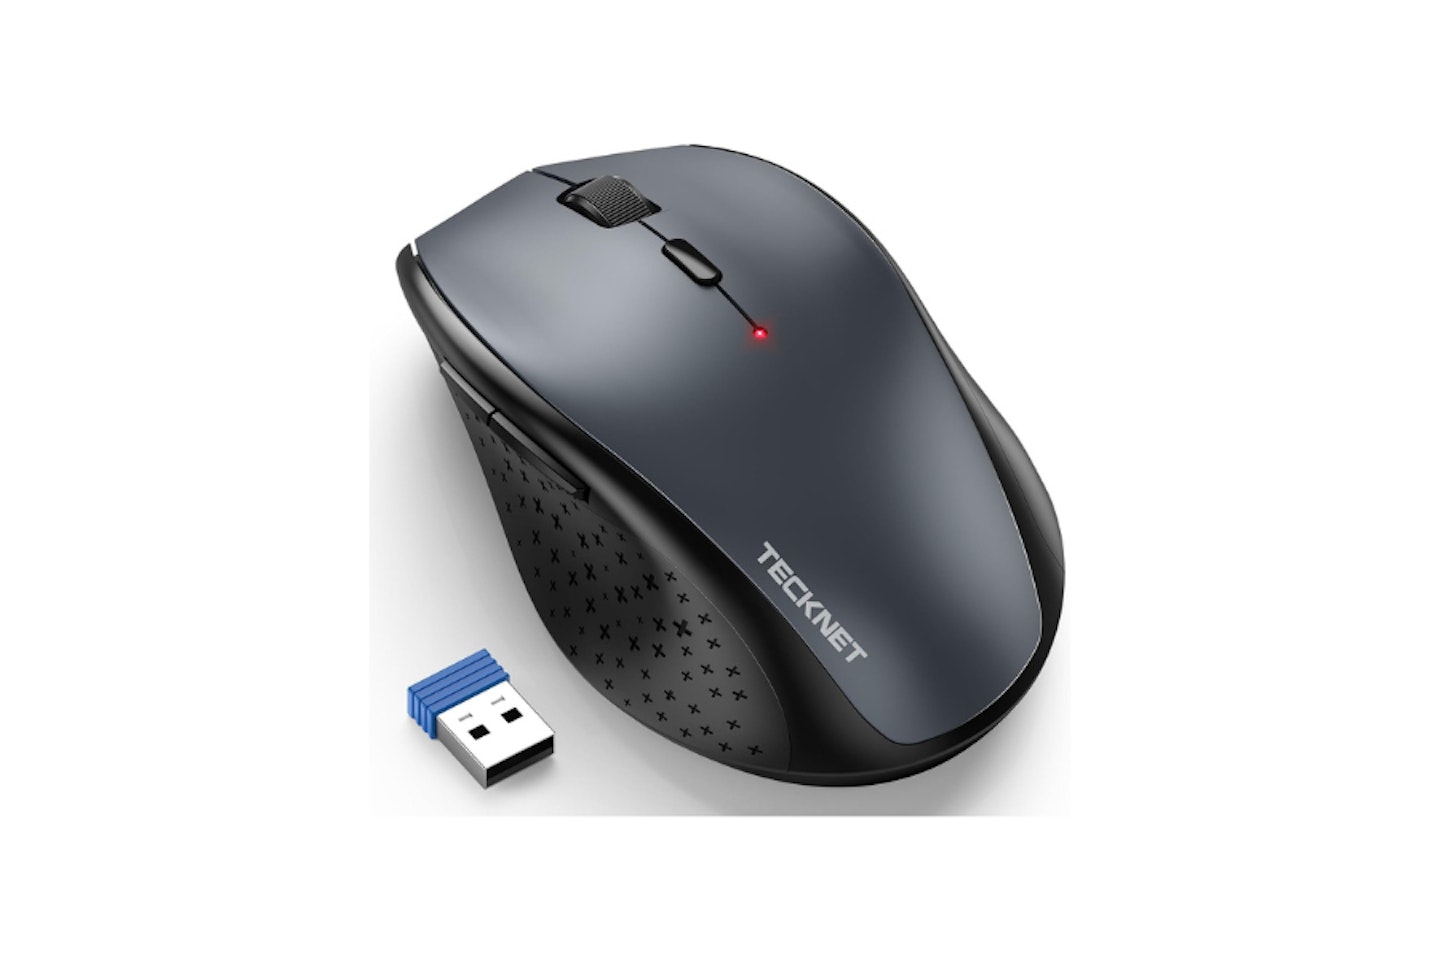 Tecknet wireless mouse